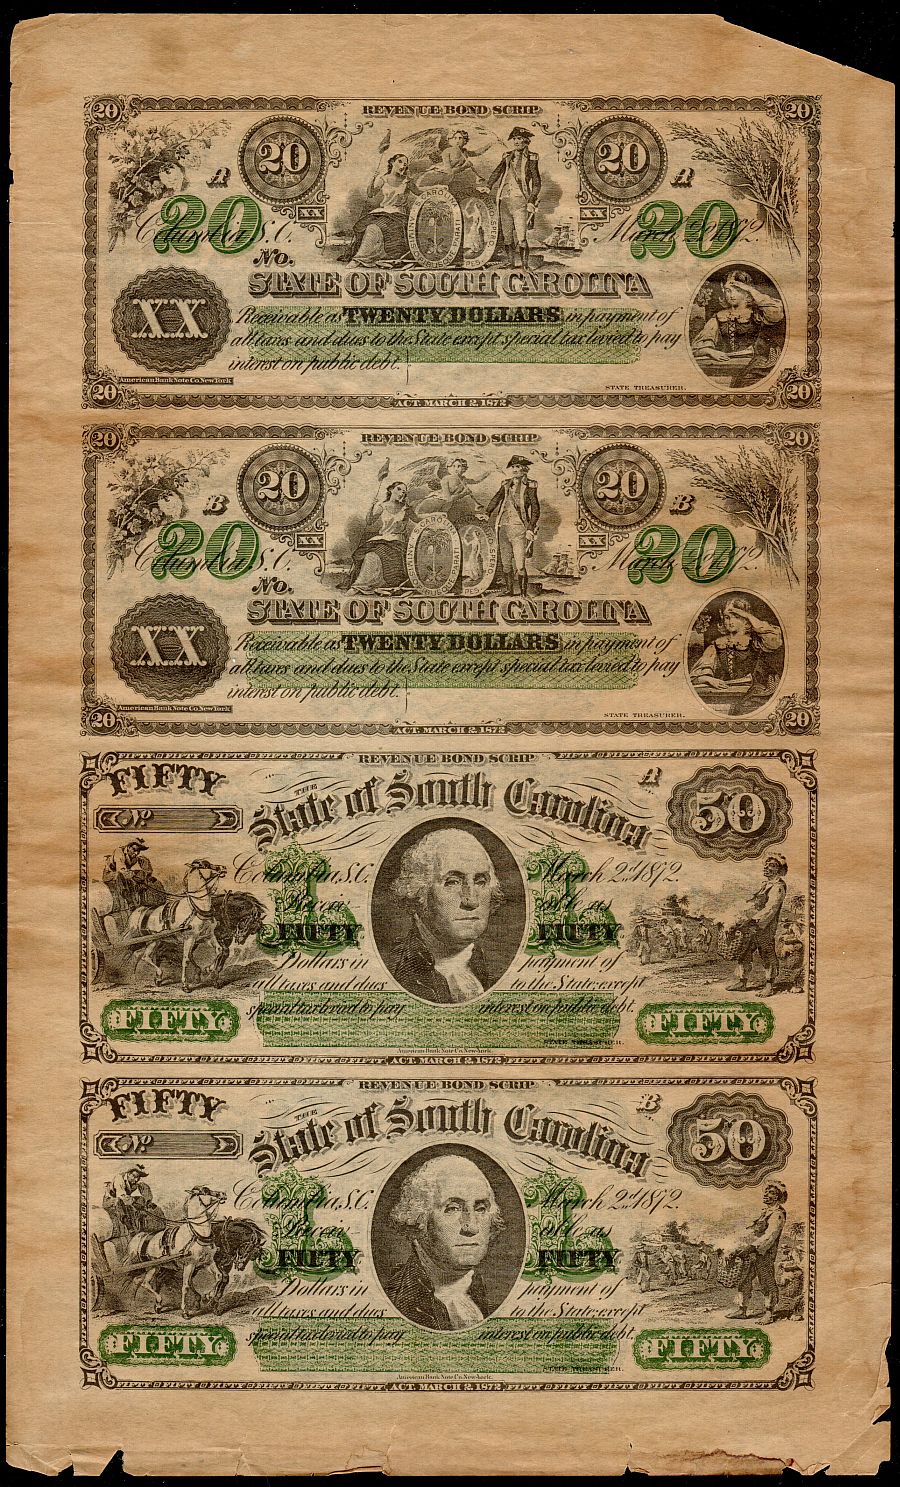 Columbia, South Carolina Revenue Bond Scrip Sheet, 1872 $20-$20-$50-$50, Remainder